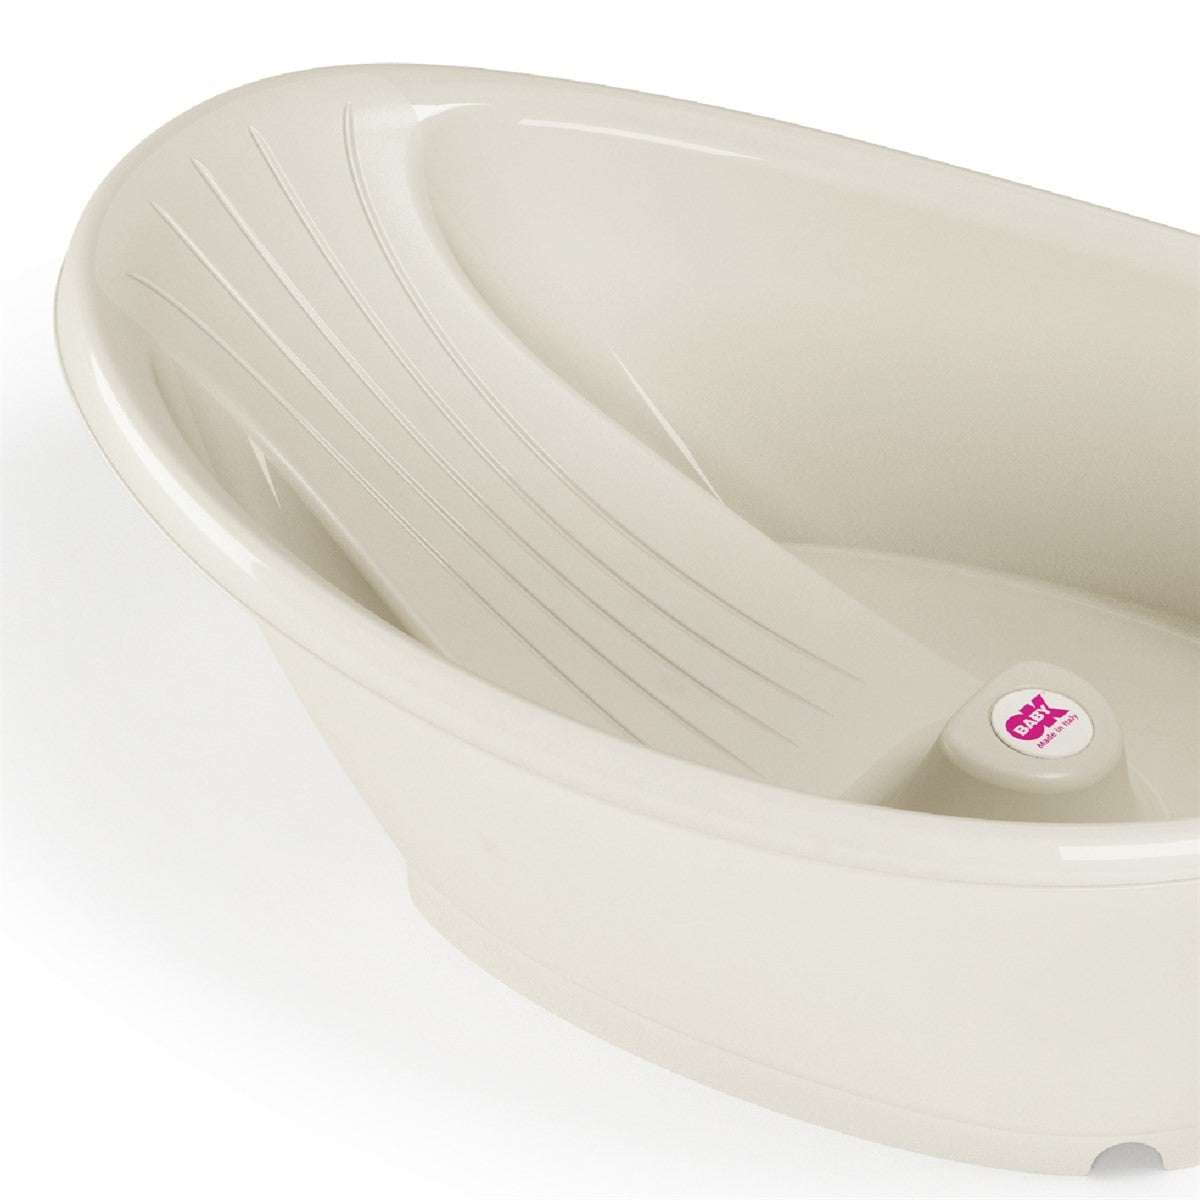 OkBaby Bella Çift Yönlü Banyo Küveti & Küvet Taşıyıcı  0-12 ay / Beyaz